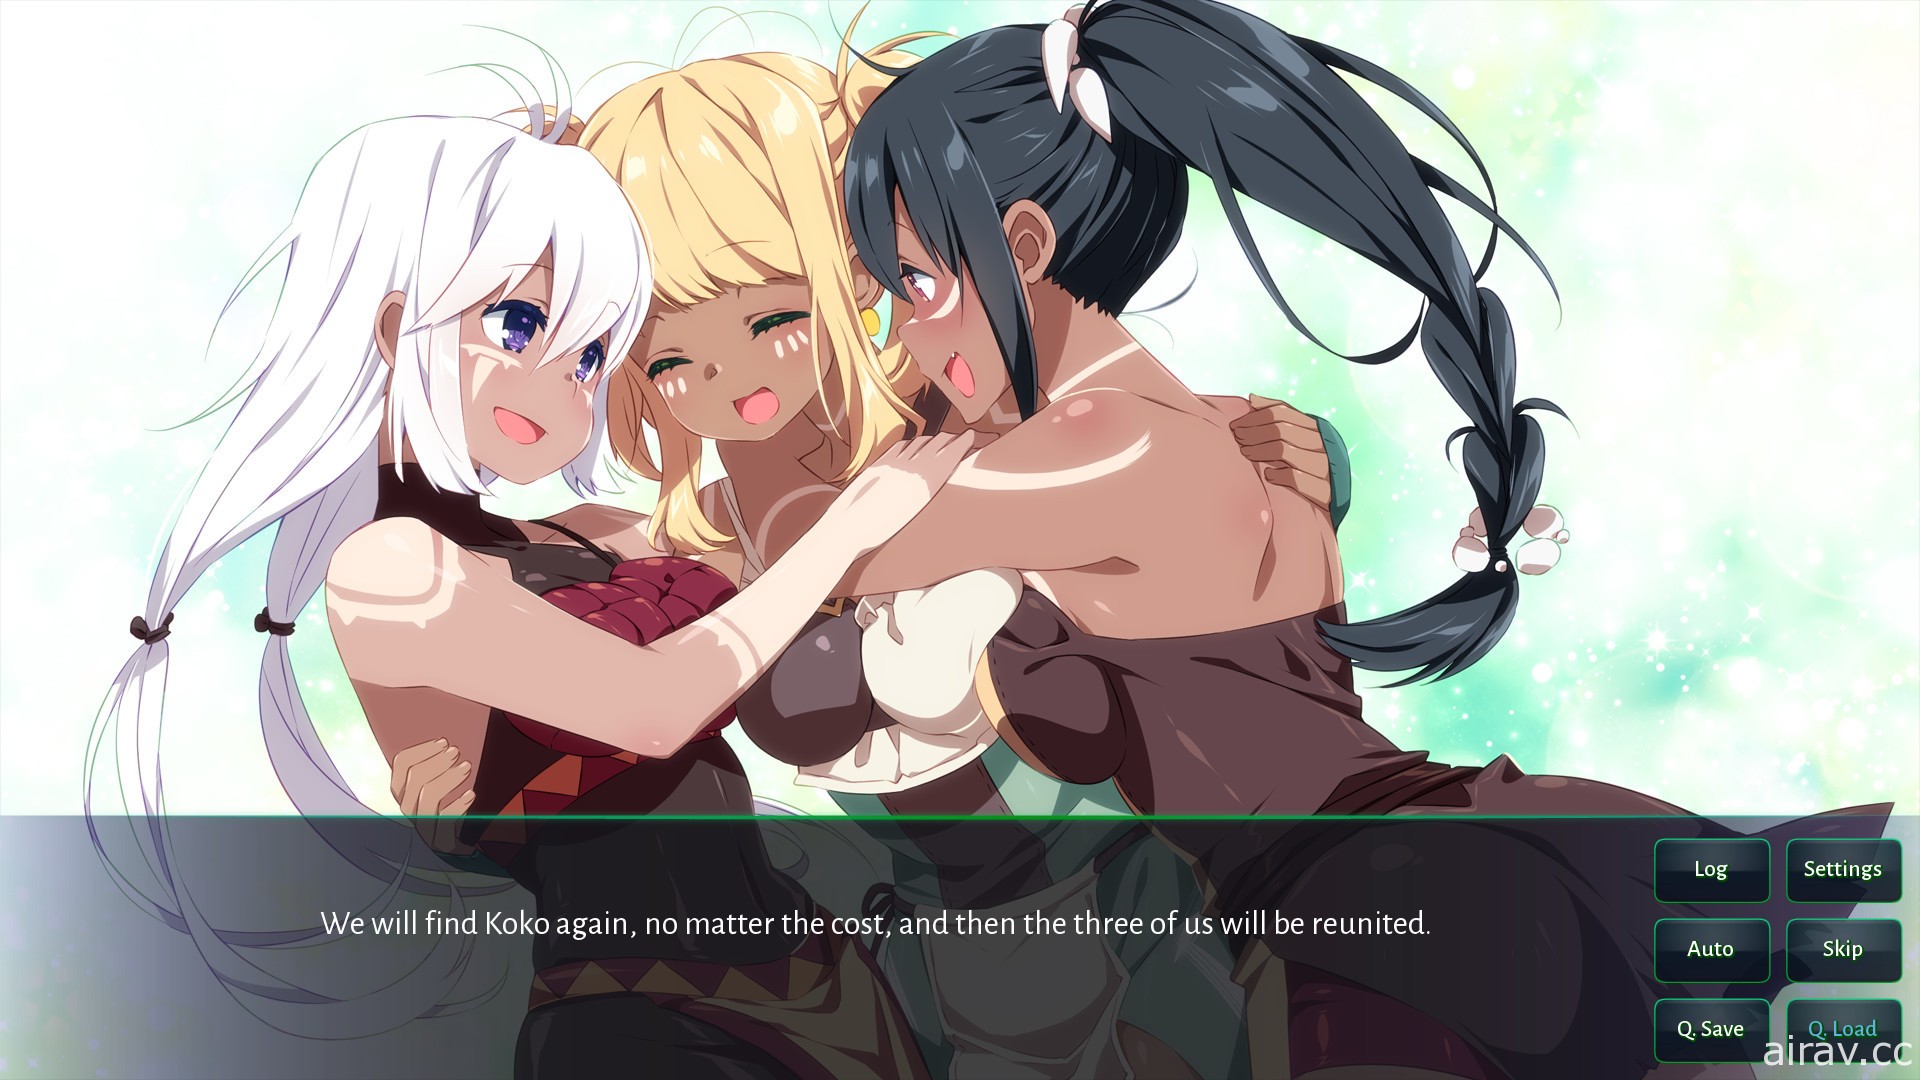 《櫻花》系列遊戲《櫻花森林女孩》4 月登陸 Steam 為找到好友忍受巫女尷尬任務